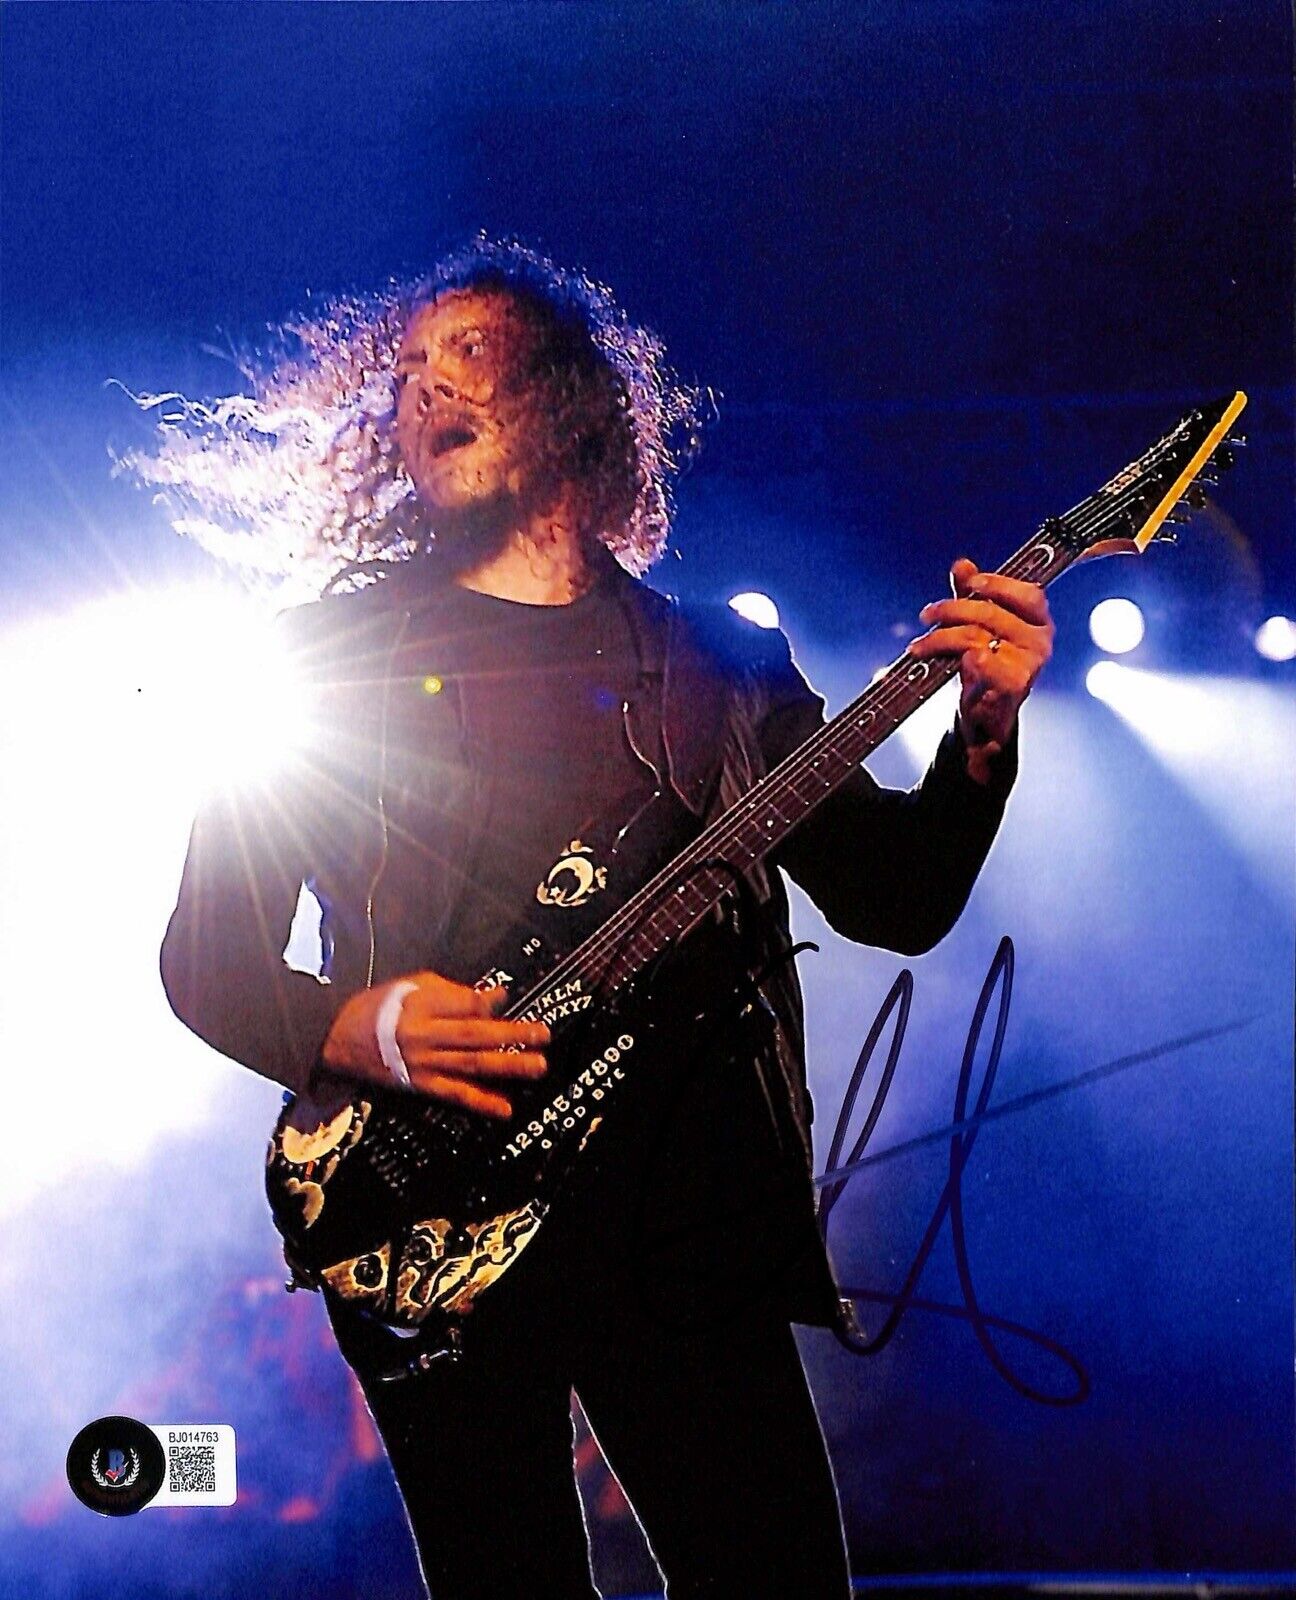 Kirk Hammett Metallica Lead Guitarist Signed 8x10 Photograph BECKETT